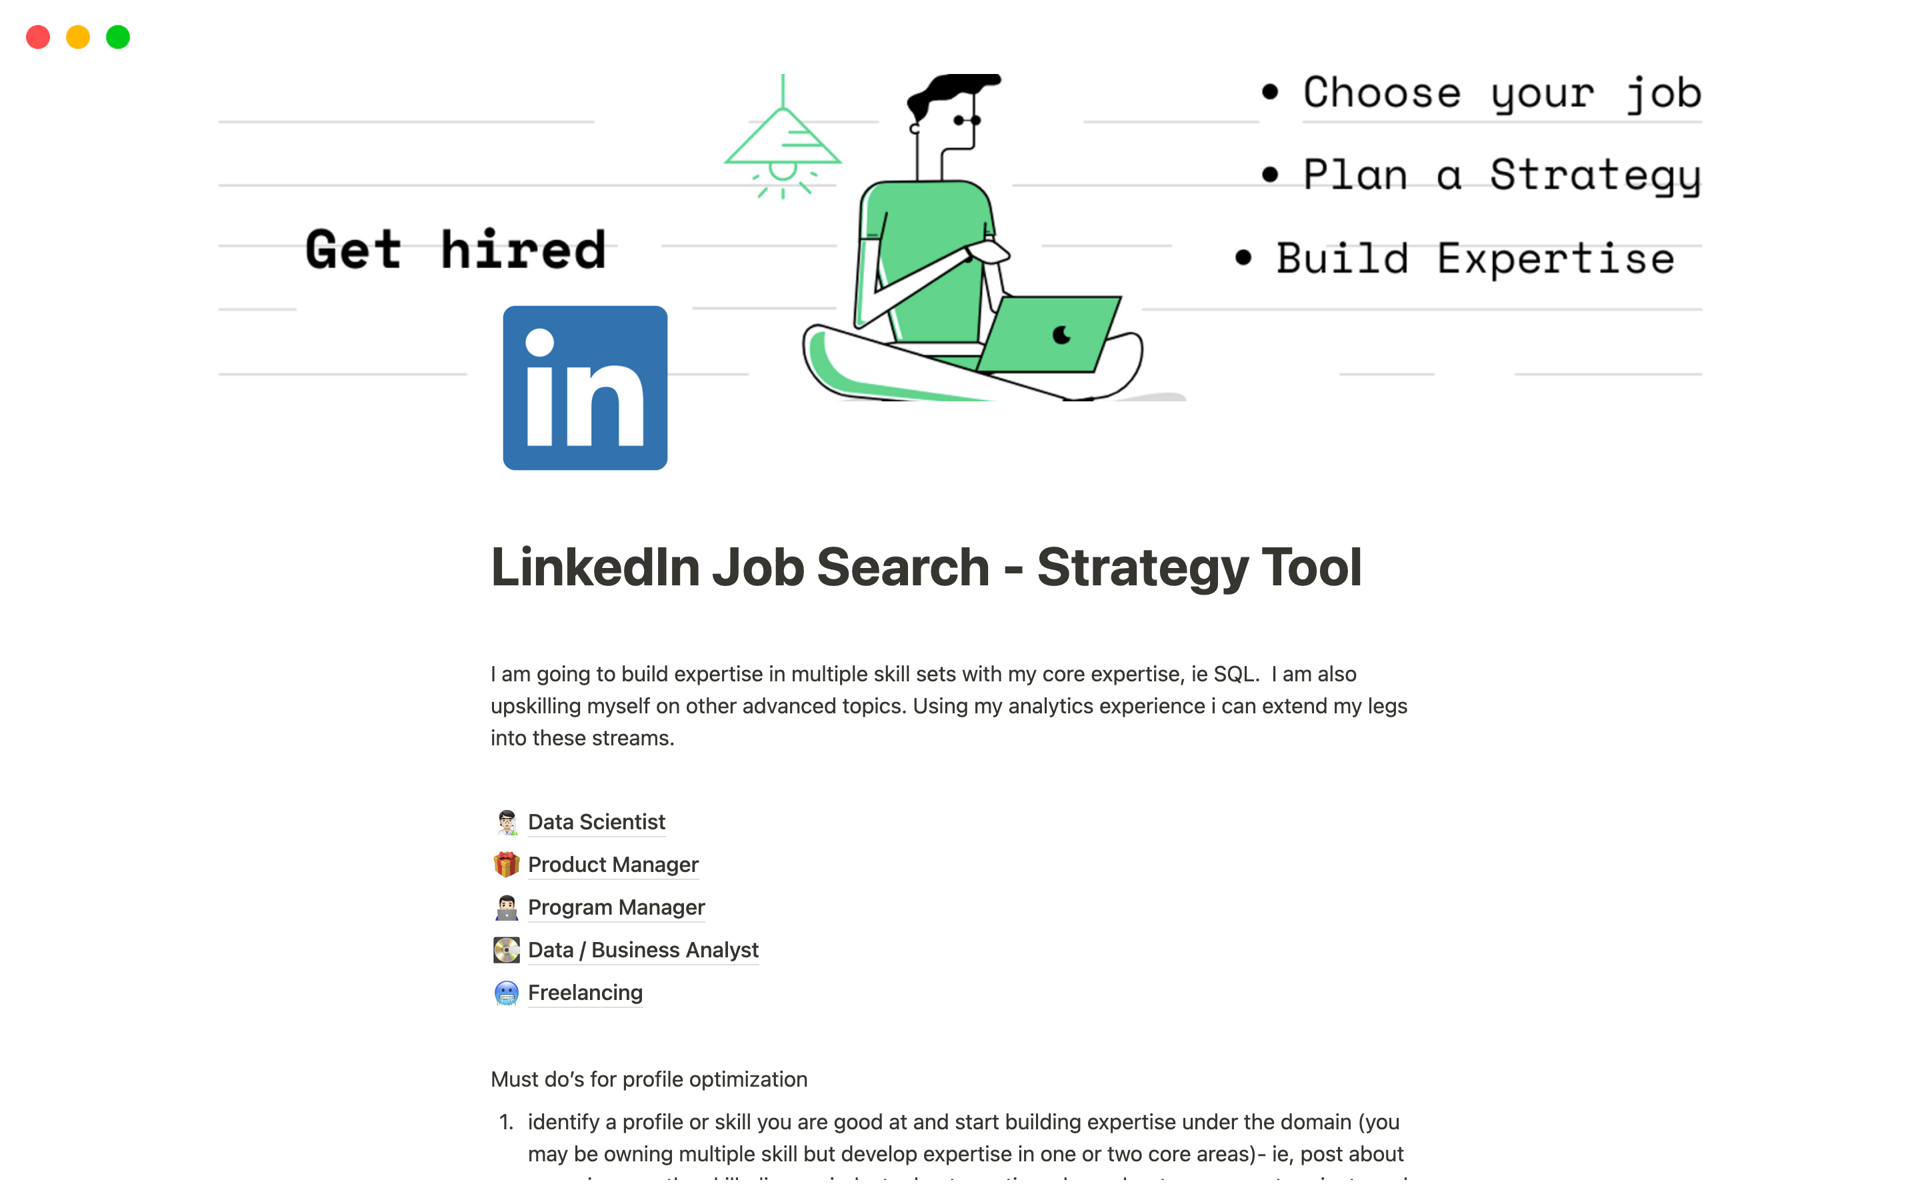 Vista previa de una plantilla para LinkedIn Job Search - Strategy Tool